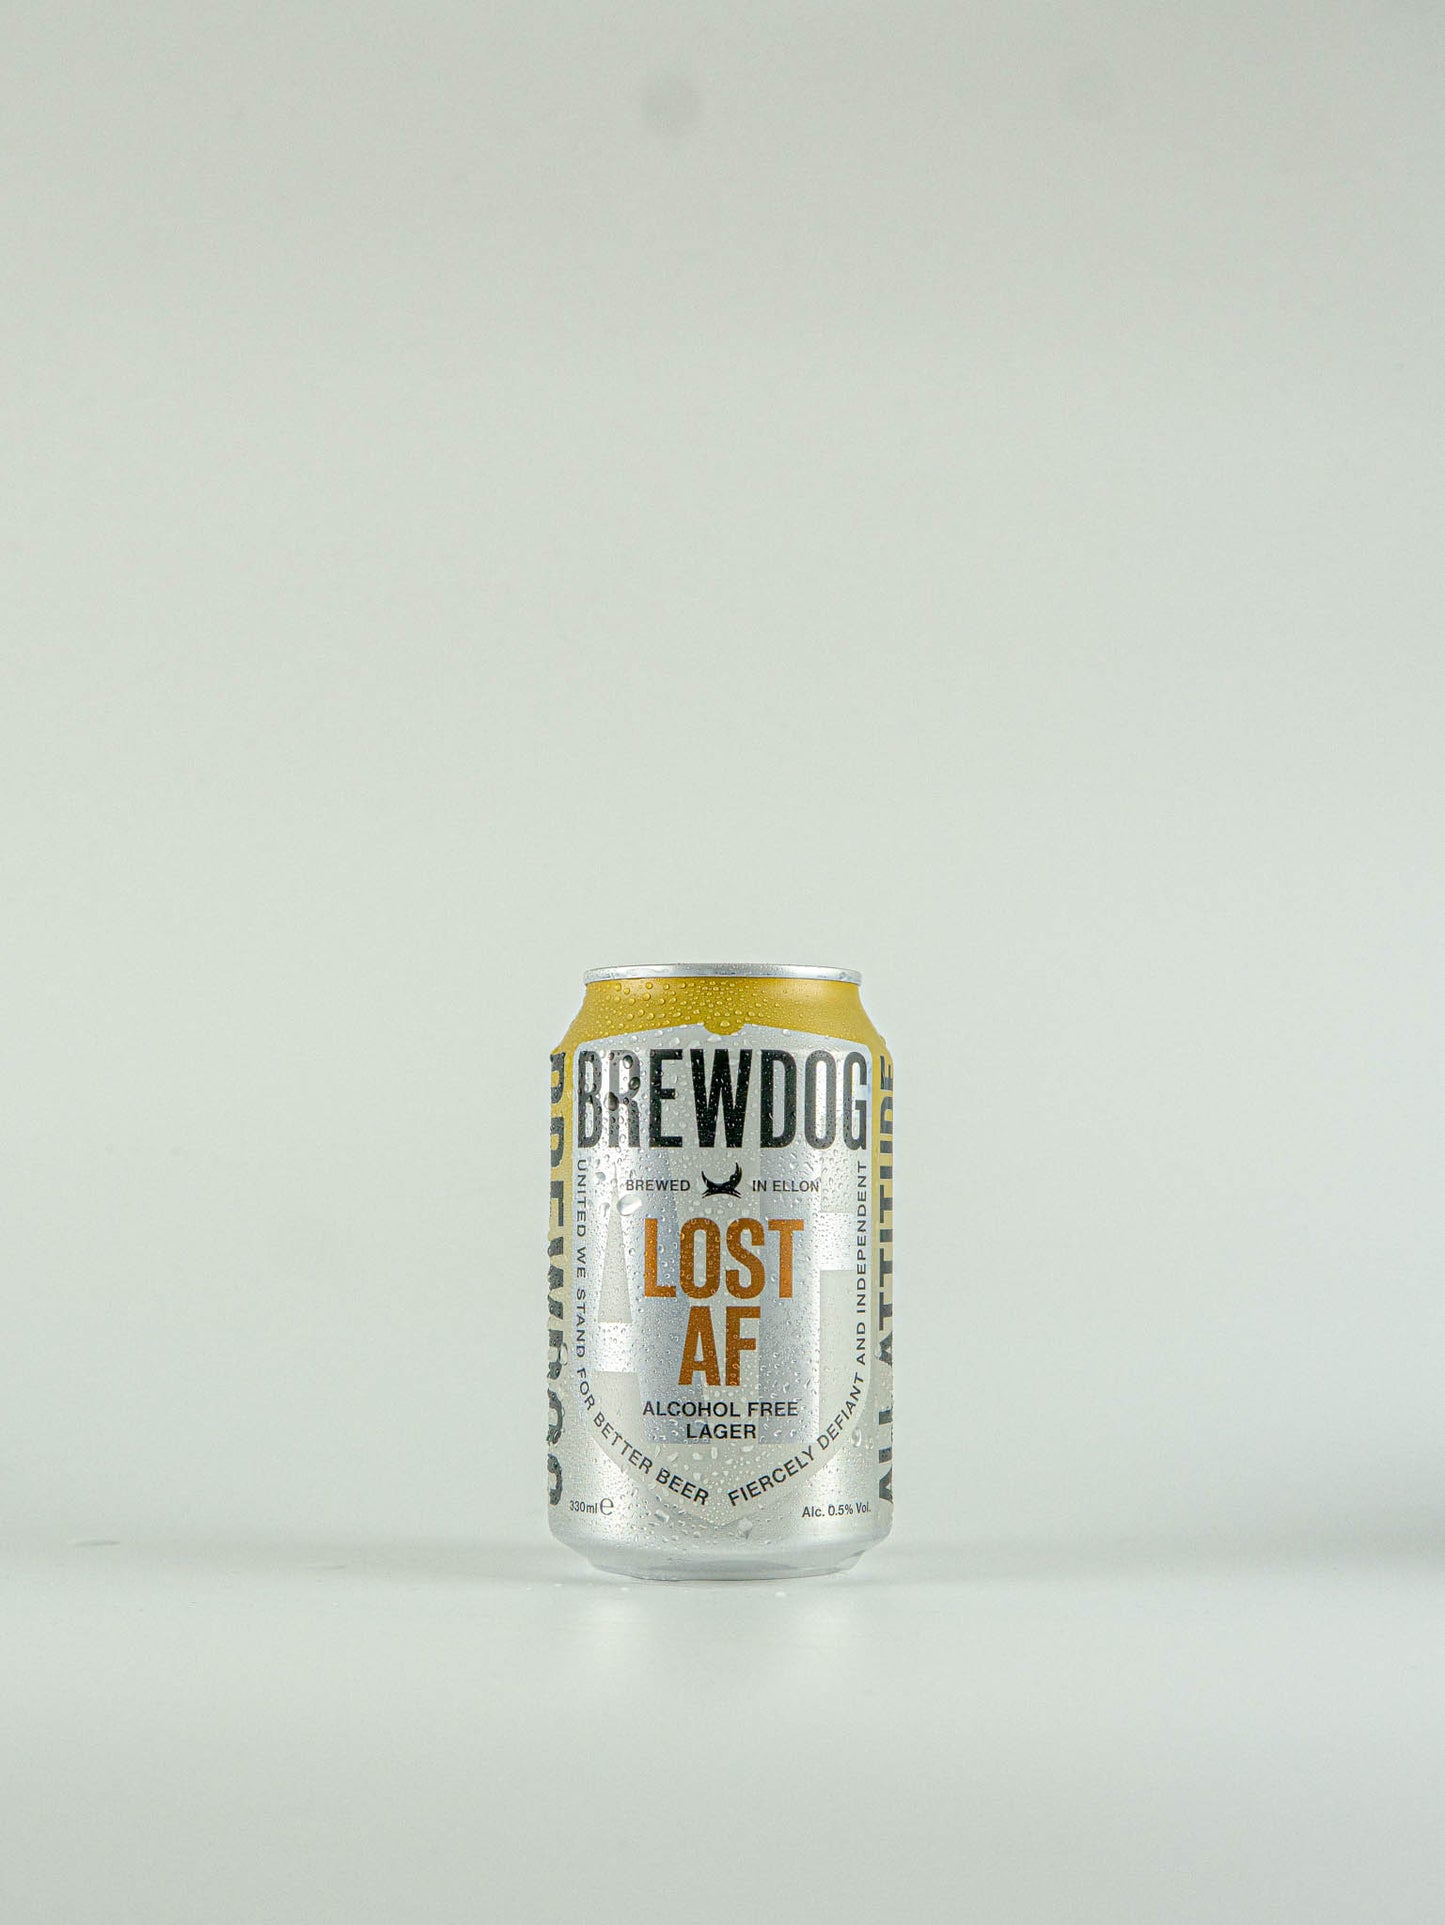 BrewDog Lost AF Alcohol Free Lager 0.5% - 330ml